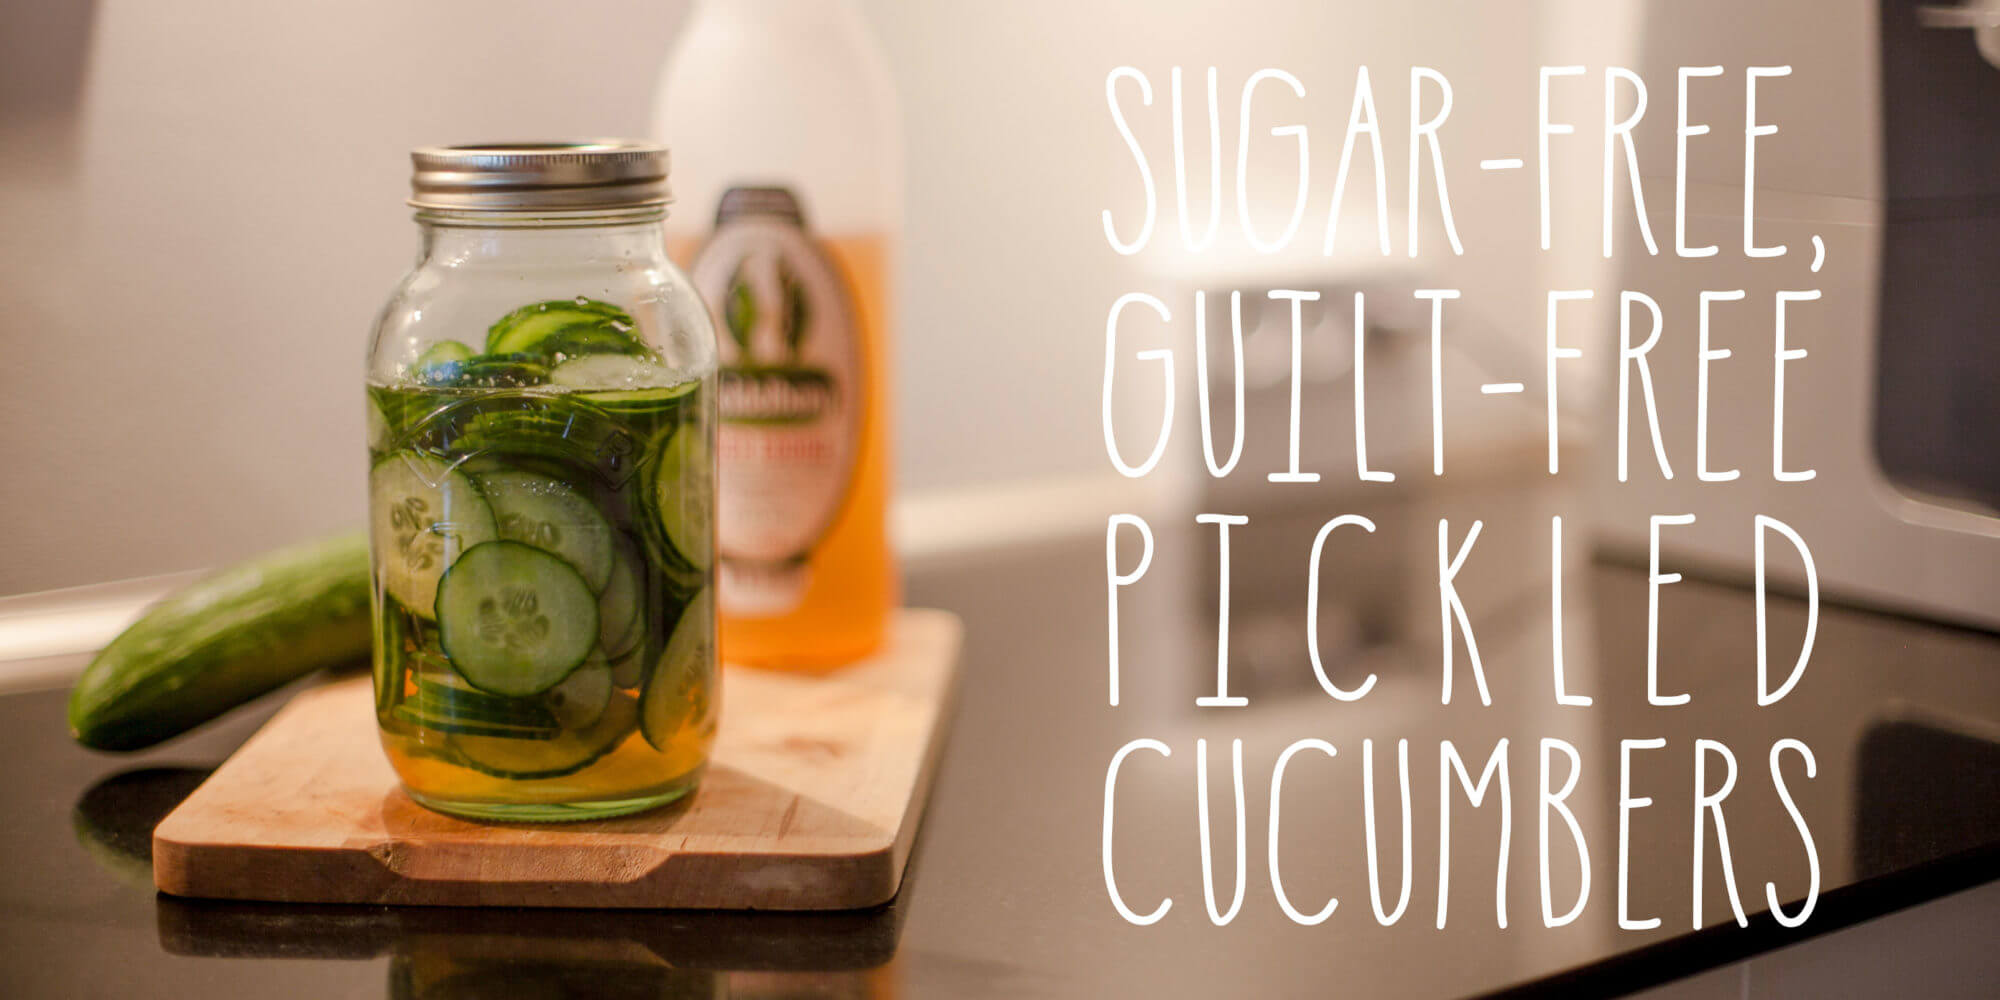 Sugar-free, guilt-free, pickled cucumbers - Foodgeek